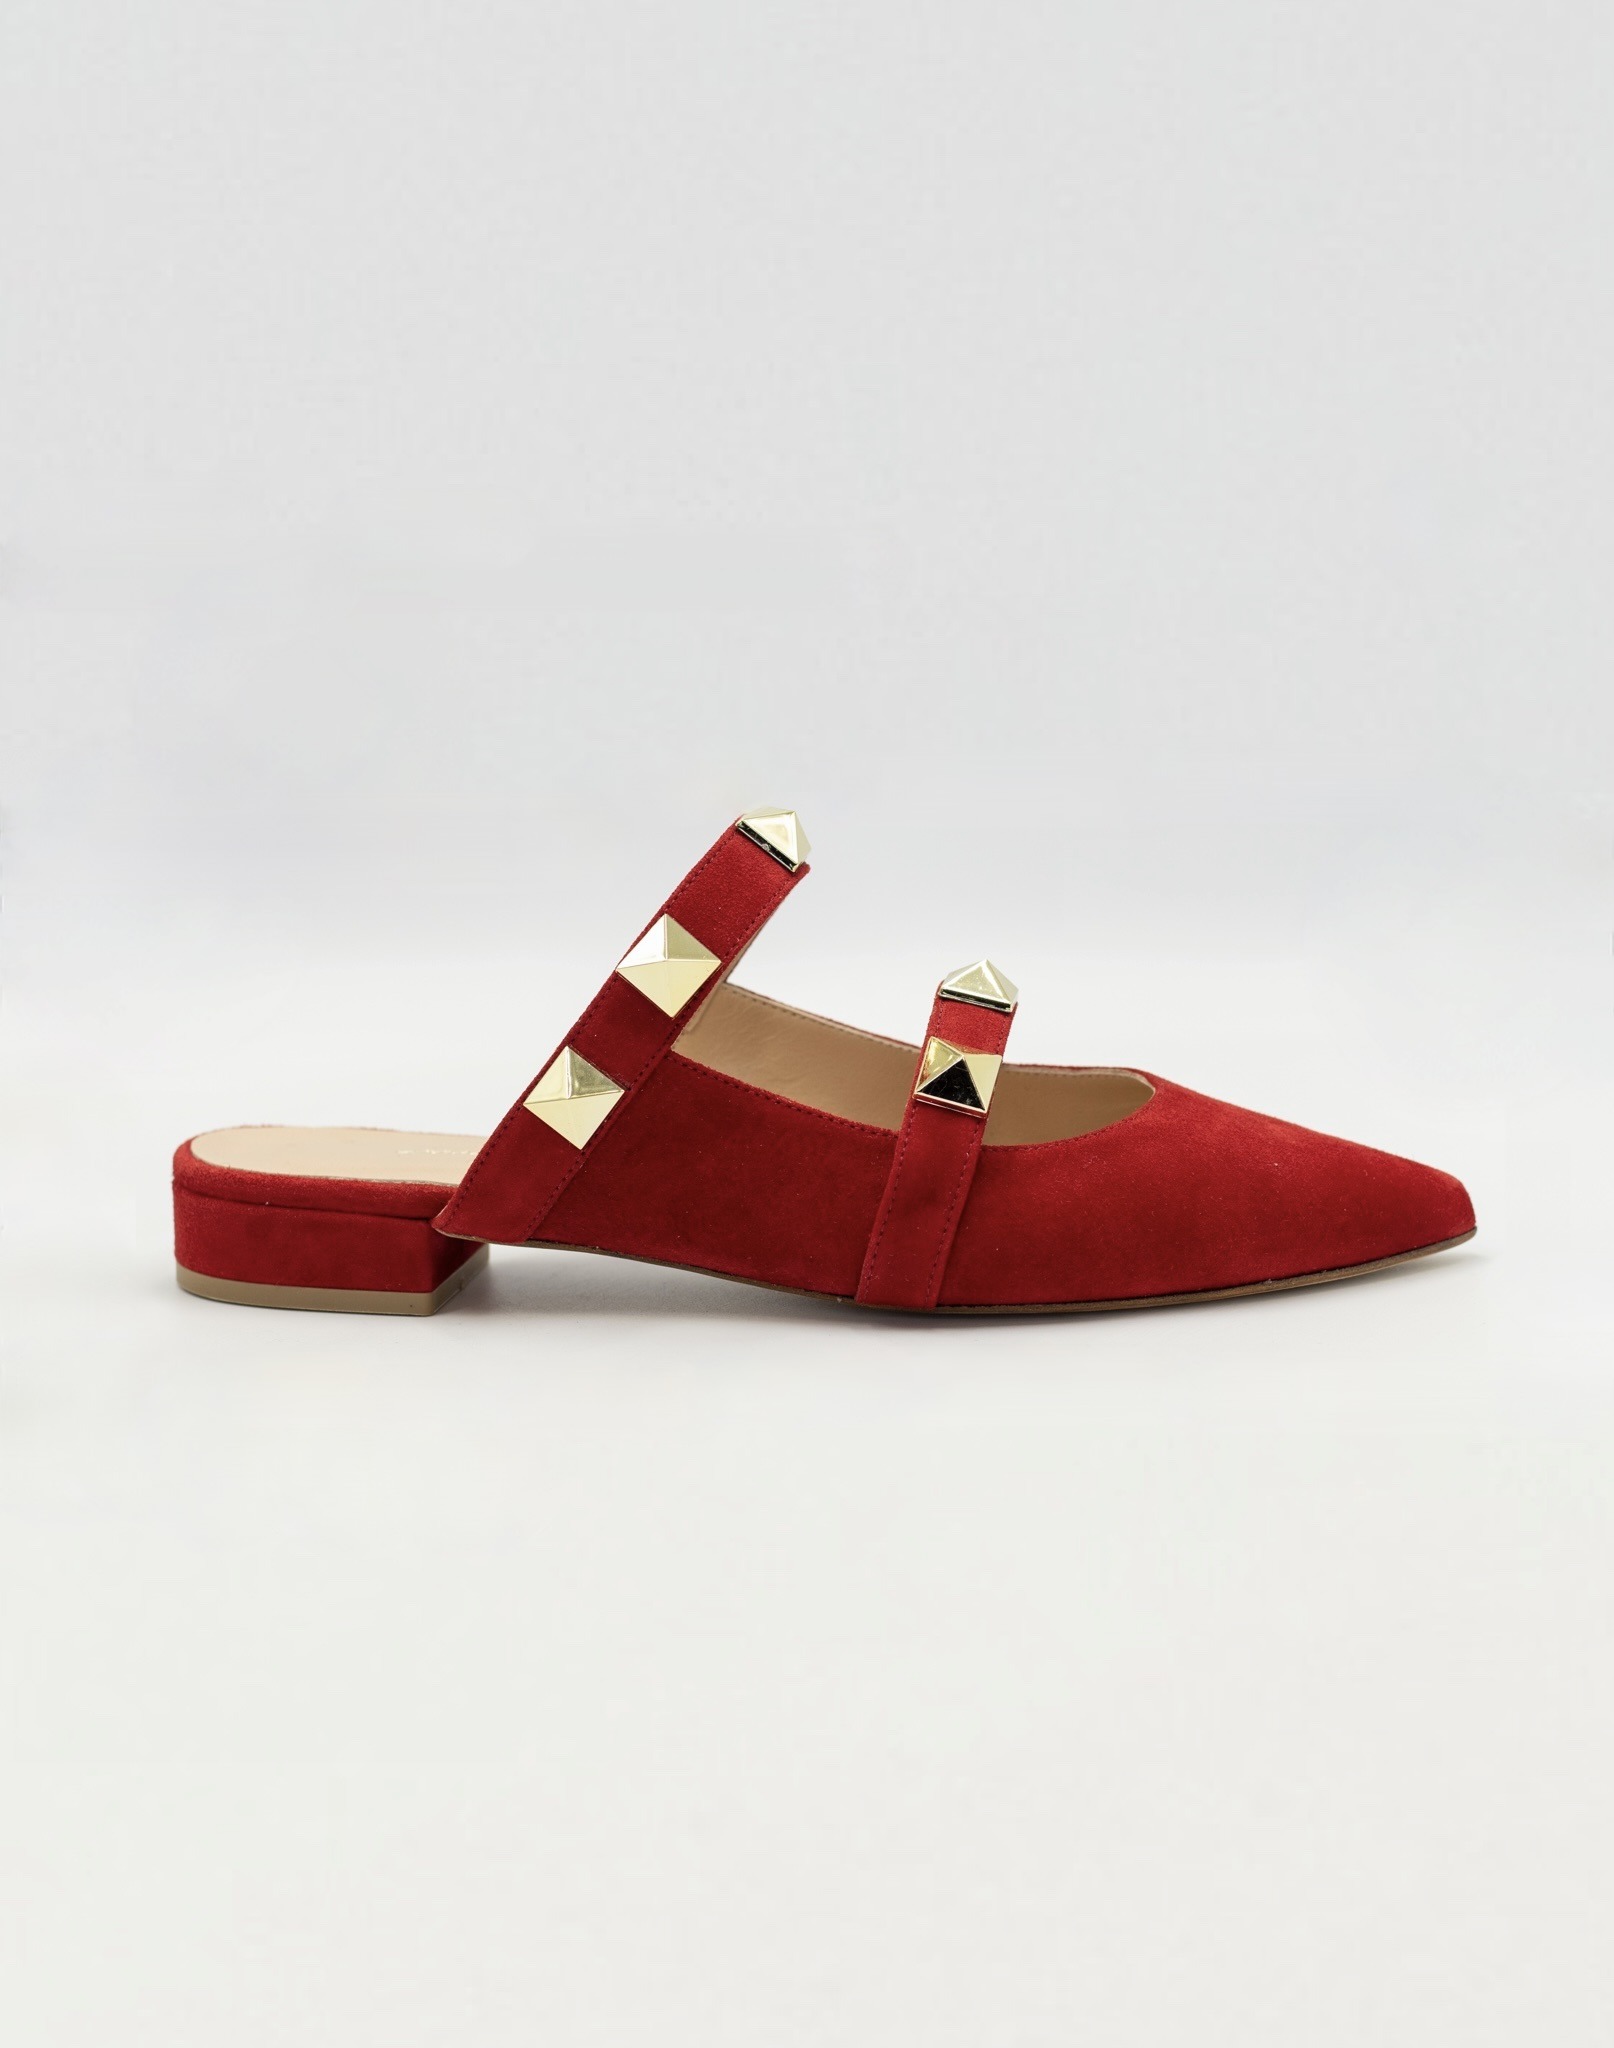 Emmeline Scarlet Balerina Pumps - Custom Made Shoes | IVANA GROSSI